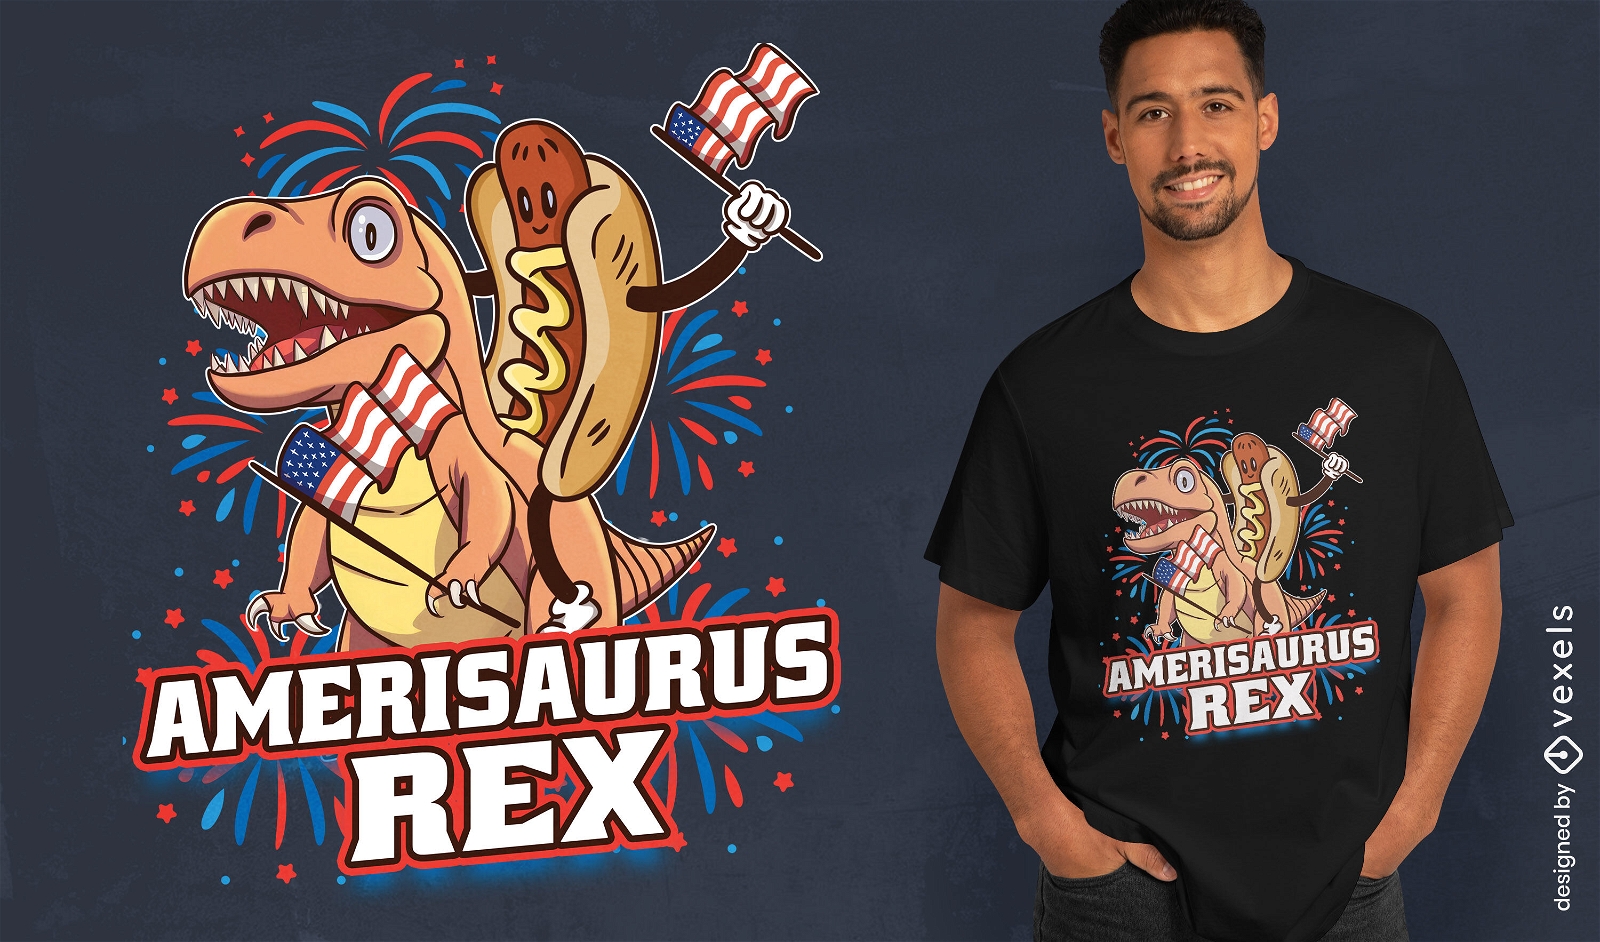 Amerisaurs rex t-shirt design